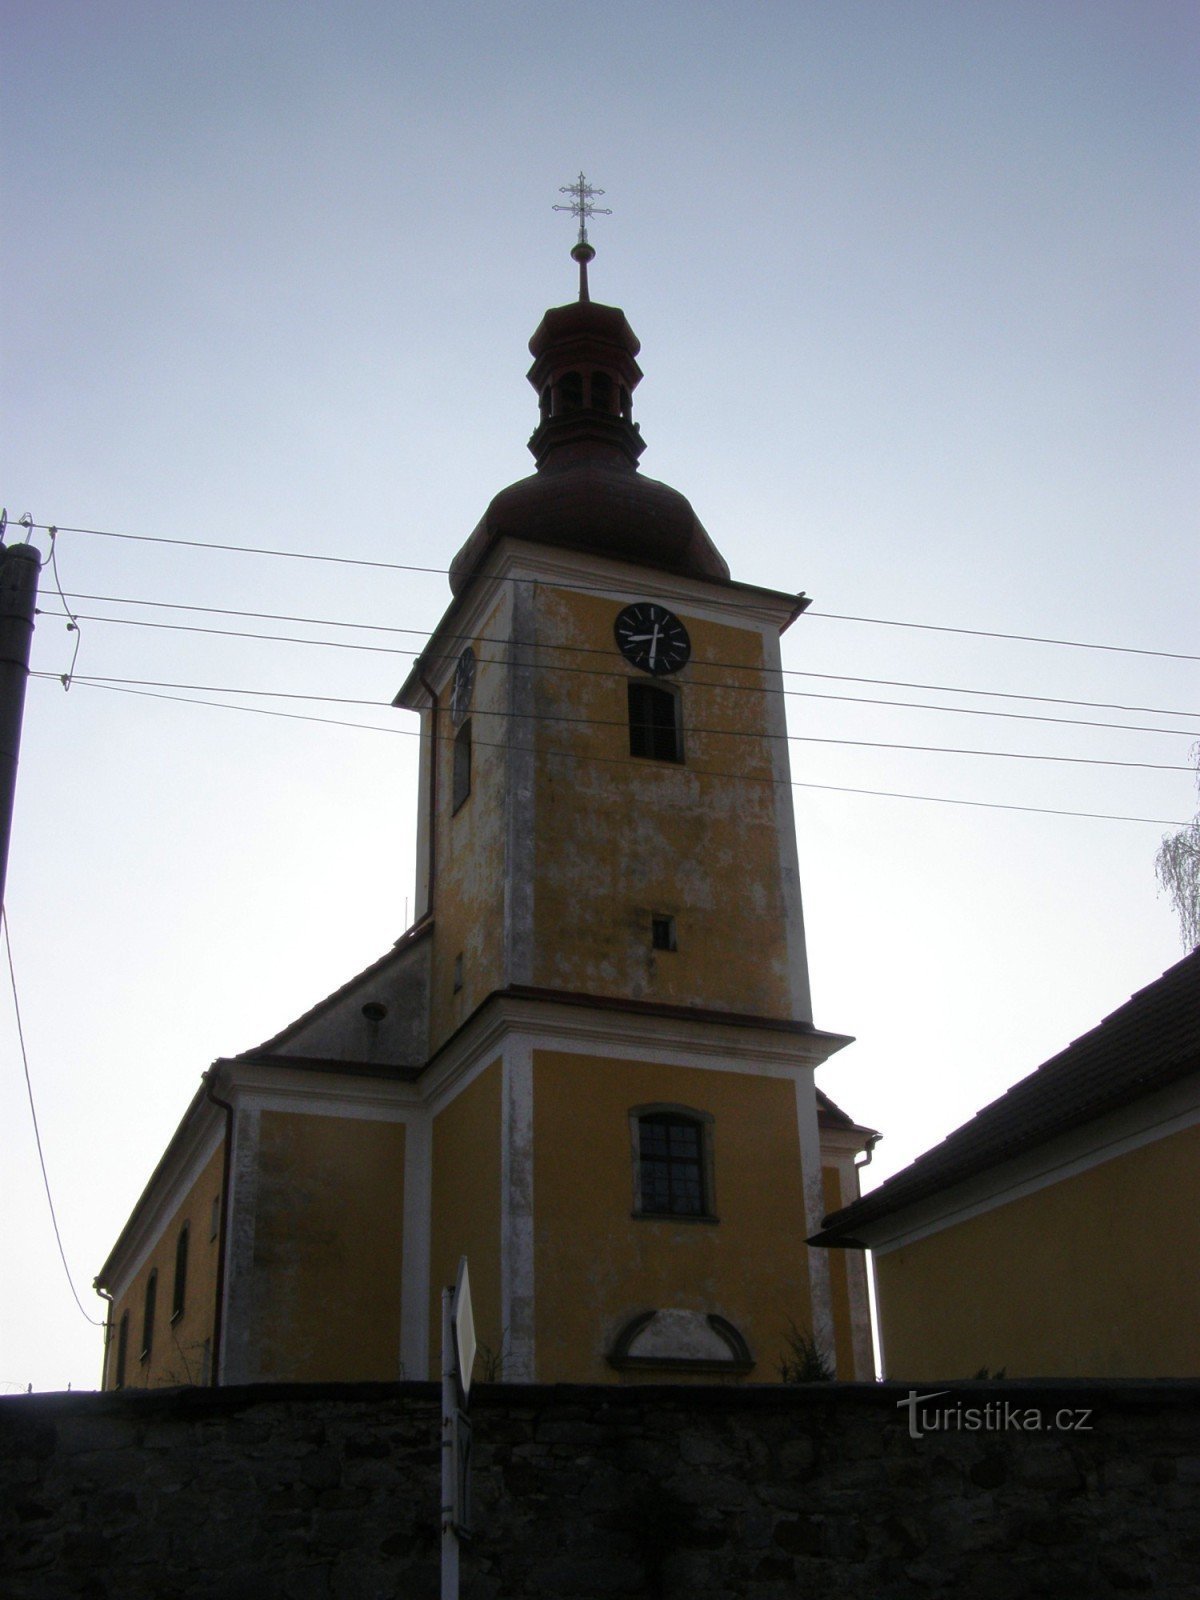 Рыбна-над-Здобници - церковь св. Якуб